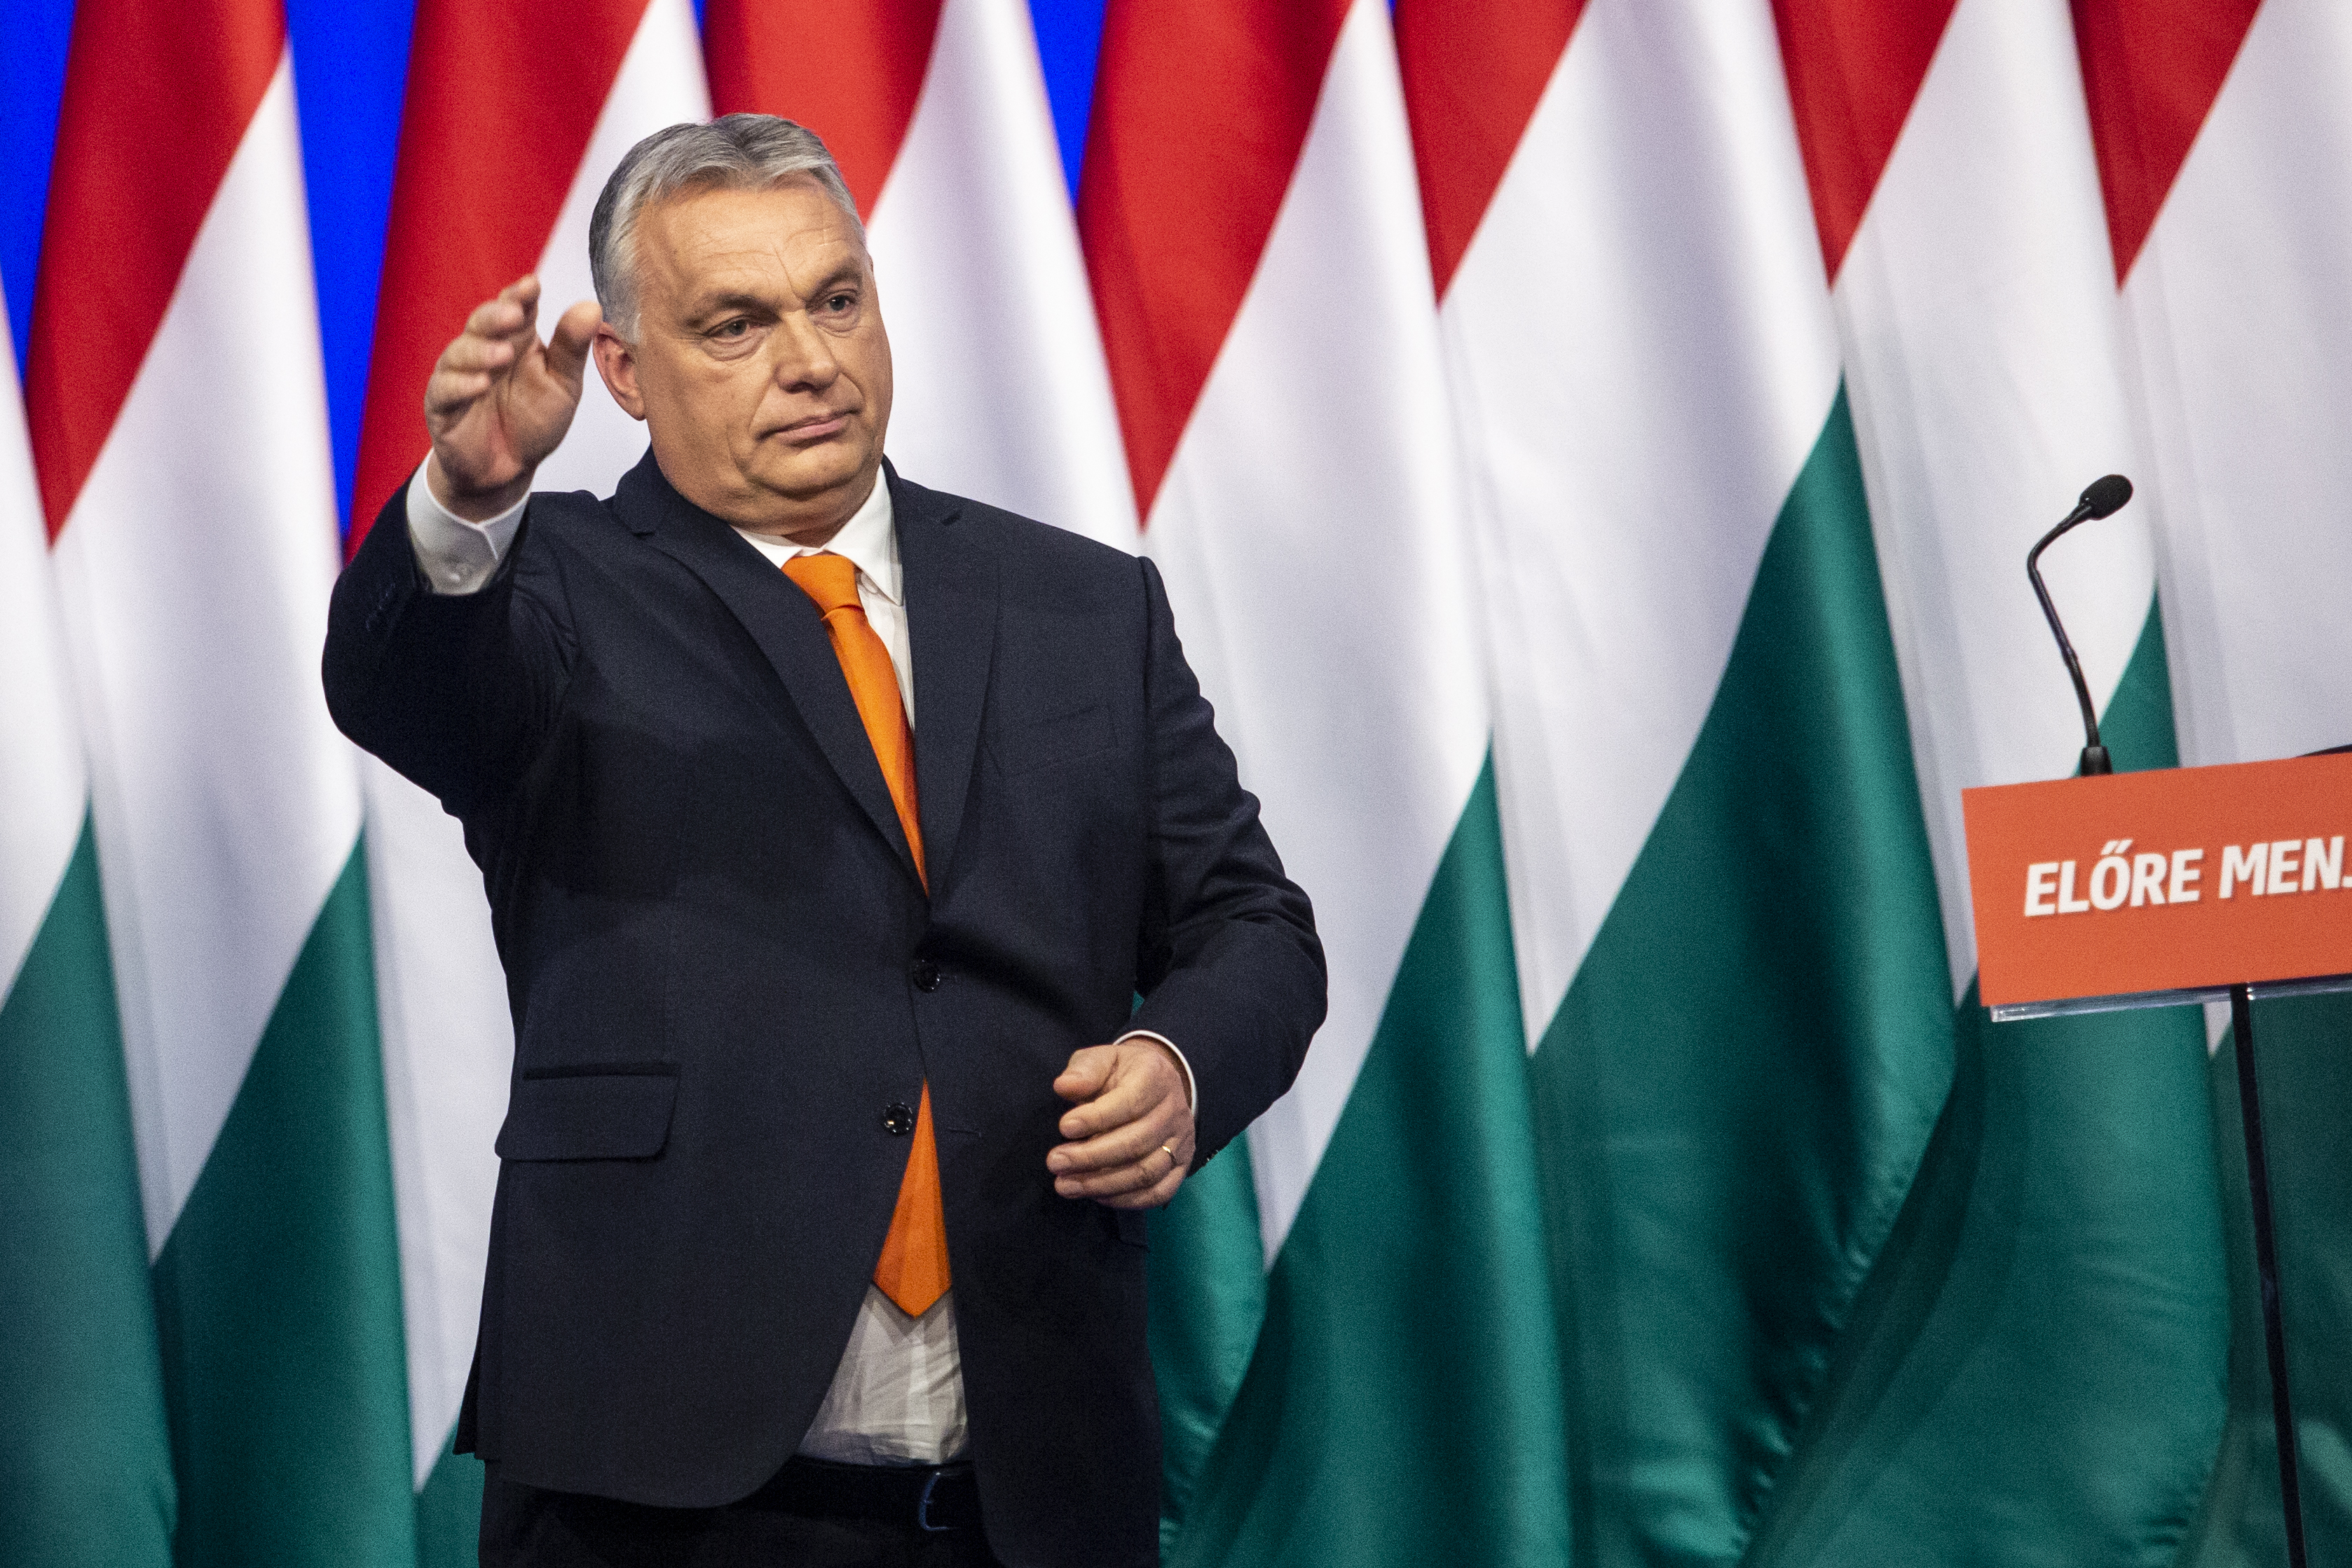 A bizonytalan és titkolózó szavazók jobban haragszanak a teljes elitre, mint az Orbán-kormányra